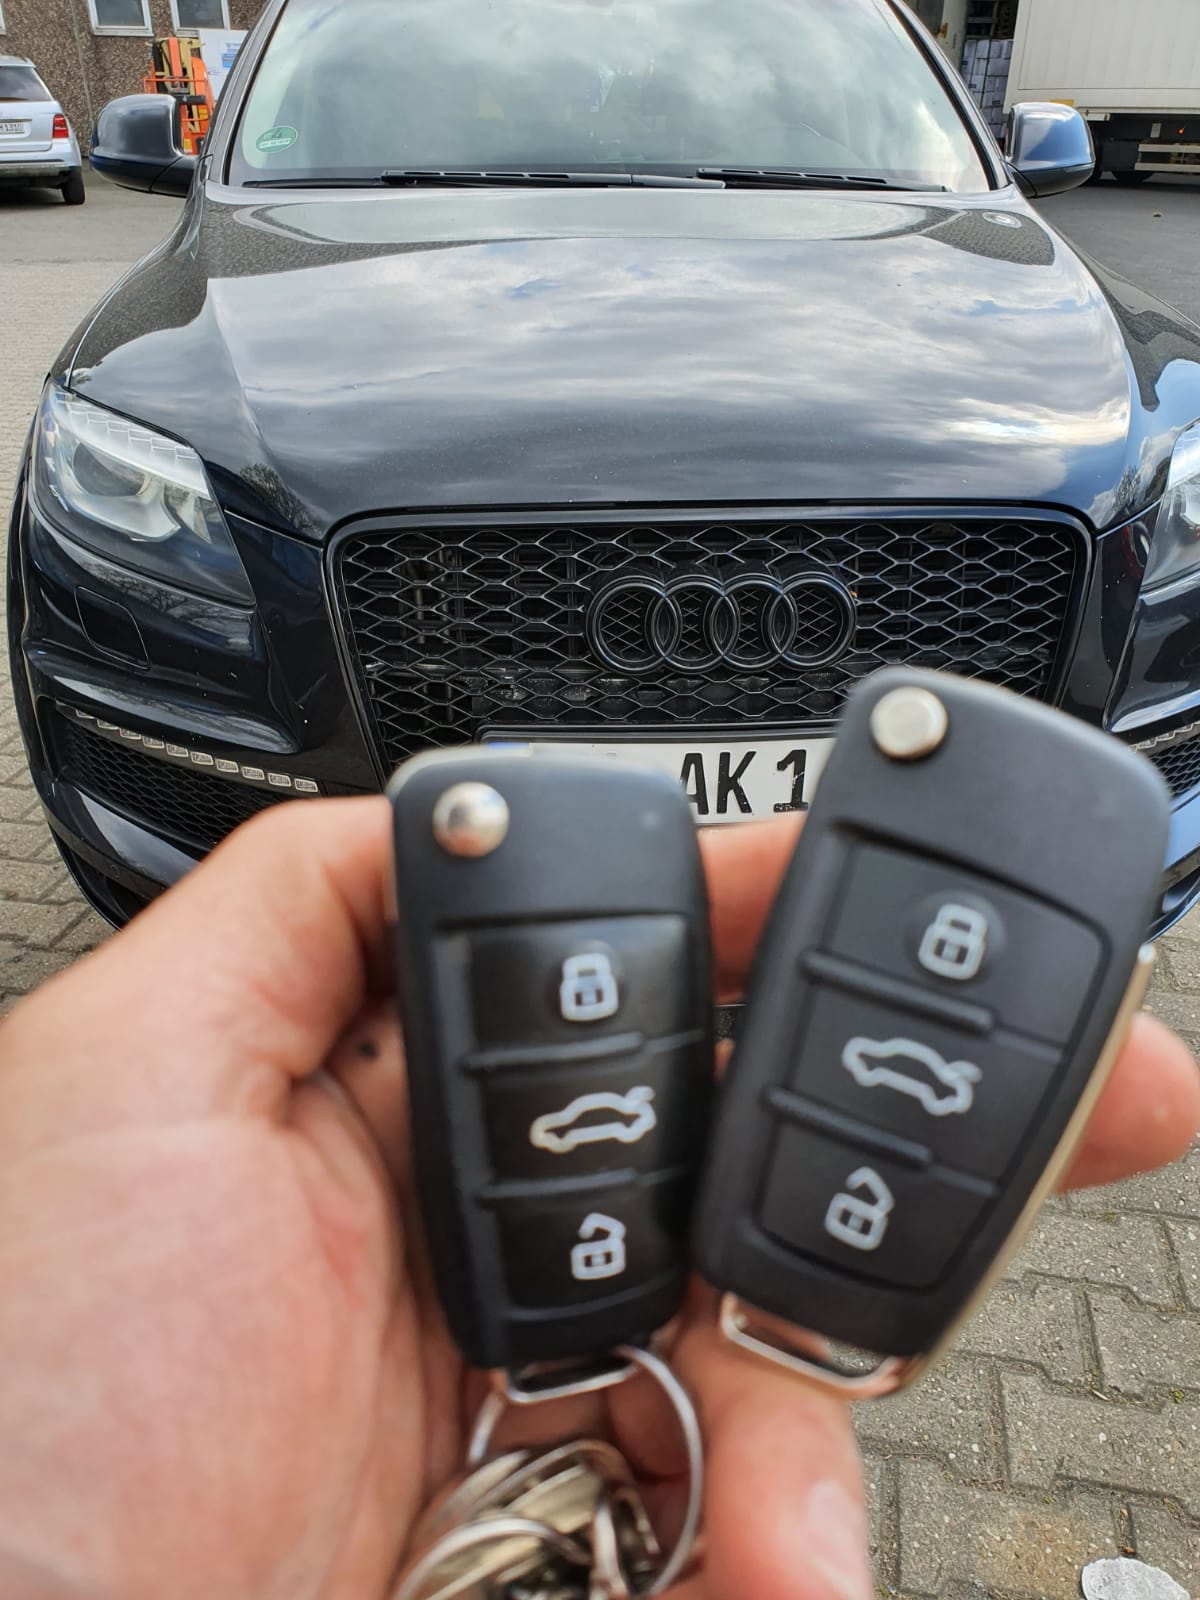 Audi Q7 Autoschlüssel defekt verloren ab 49€ nachmachen